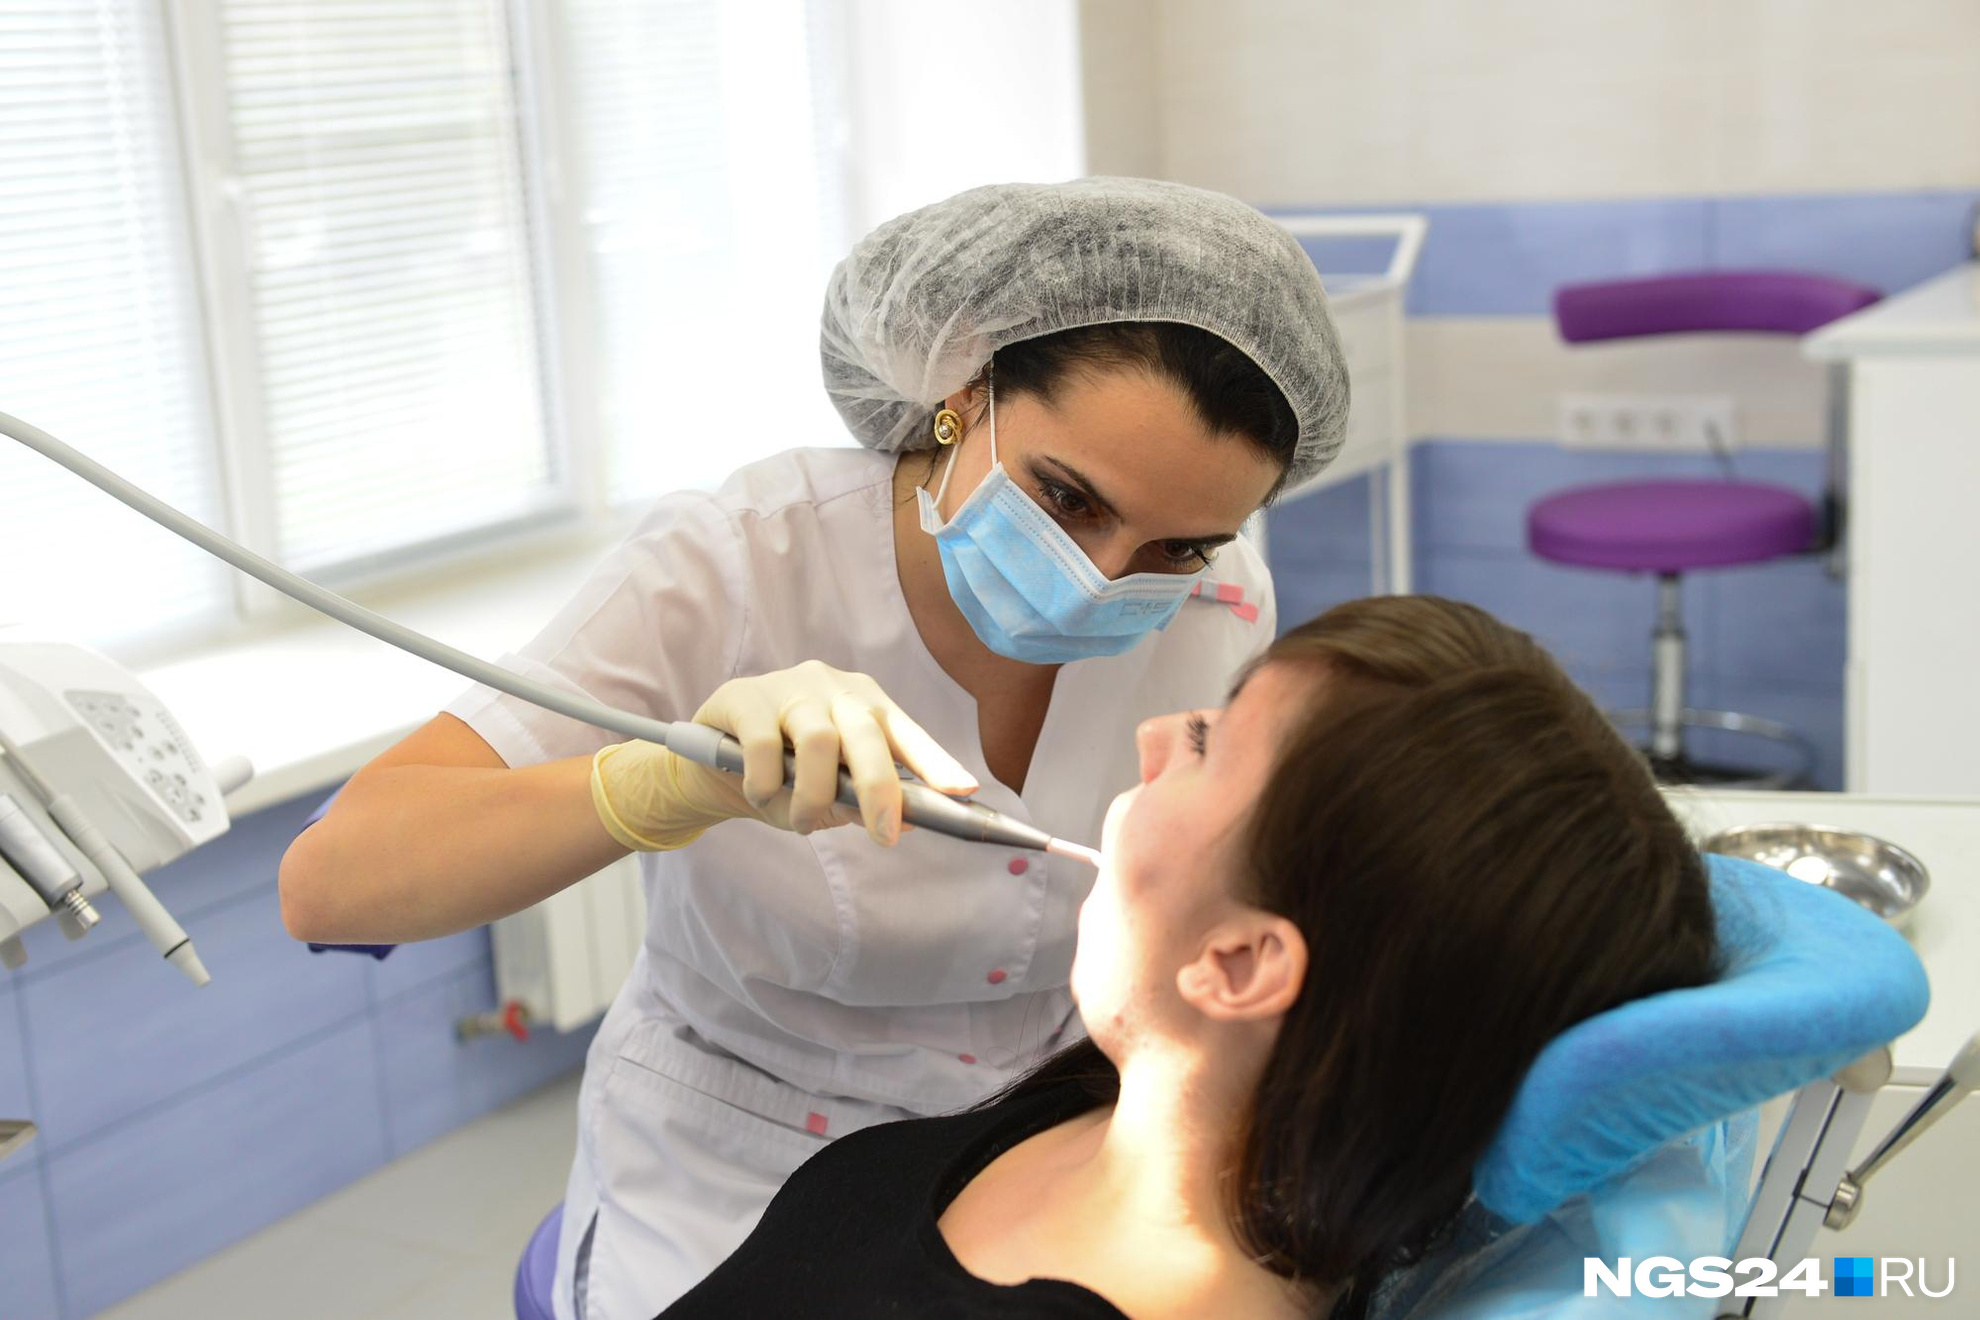 «Не пойду в соседний кабинет»: красноярские стоматологи честно рассказали о проблемах в отрасли и почему лечить зубы — дорого